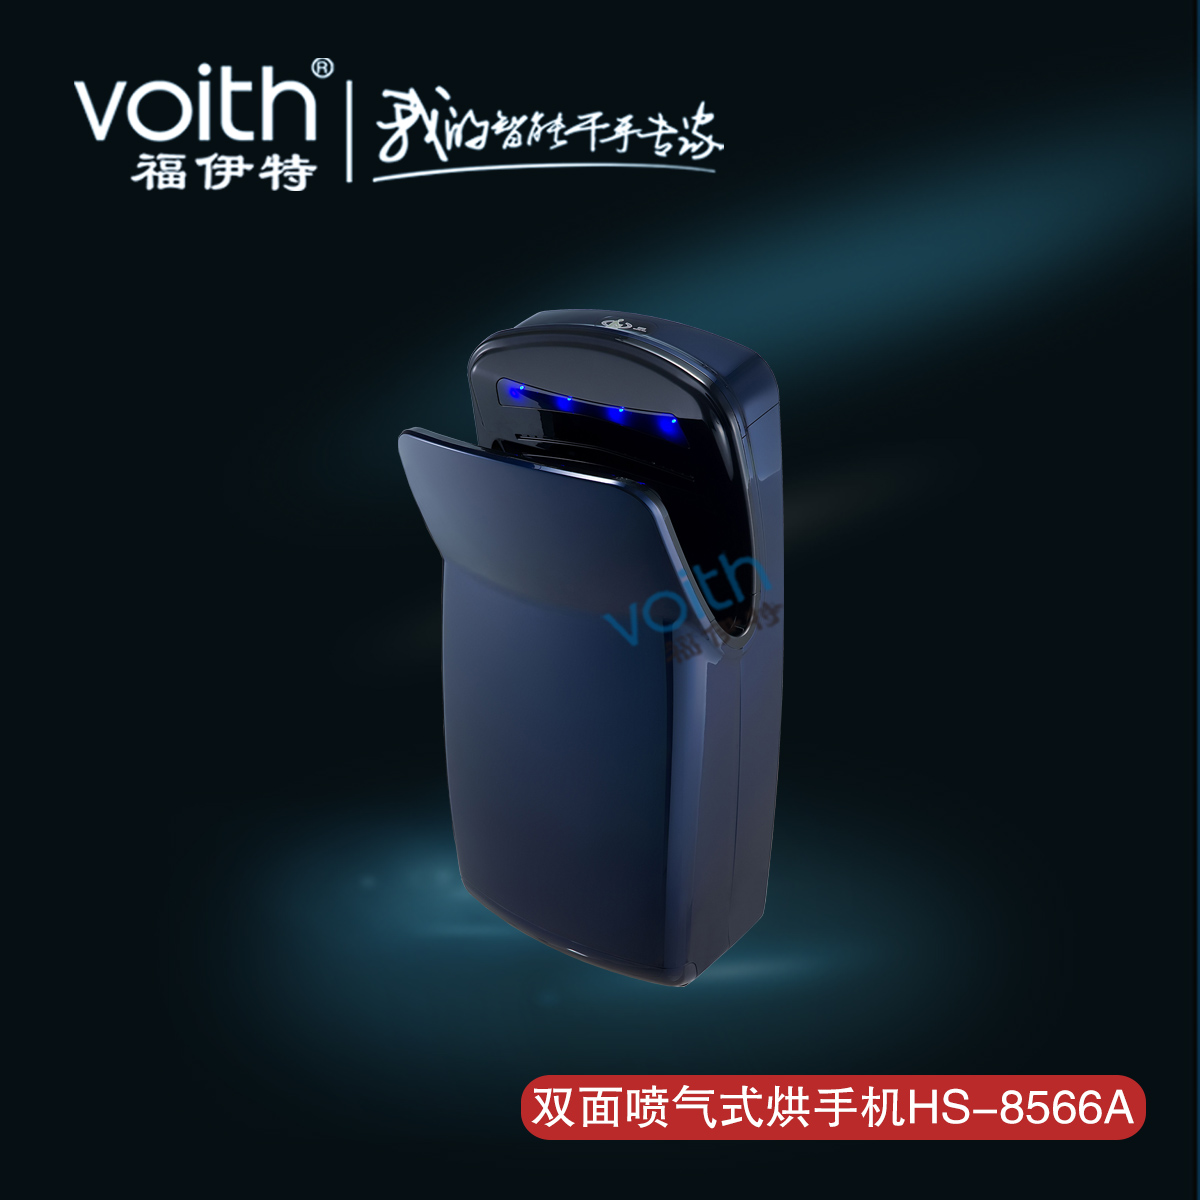 上海市喷气式烘手机喷射式自动感应干手器厂家